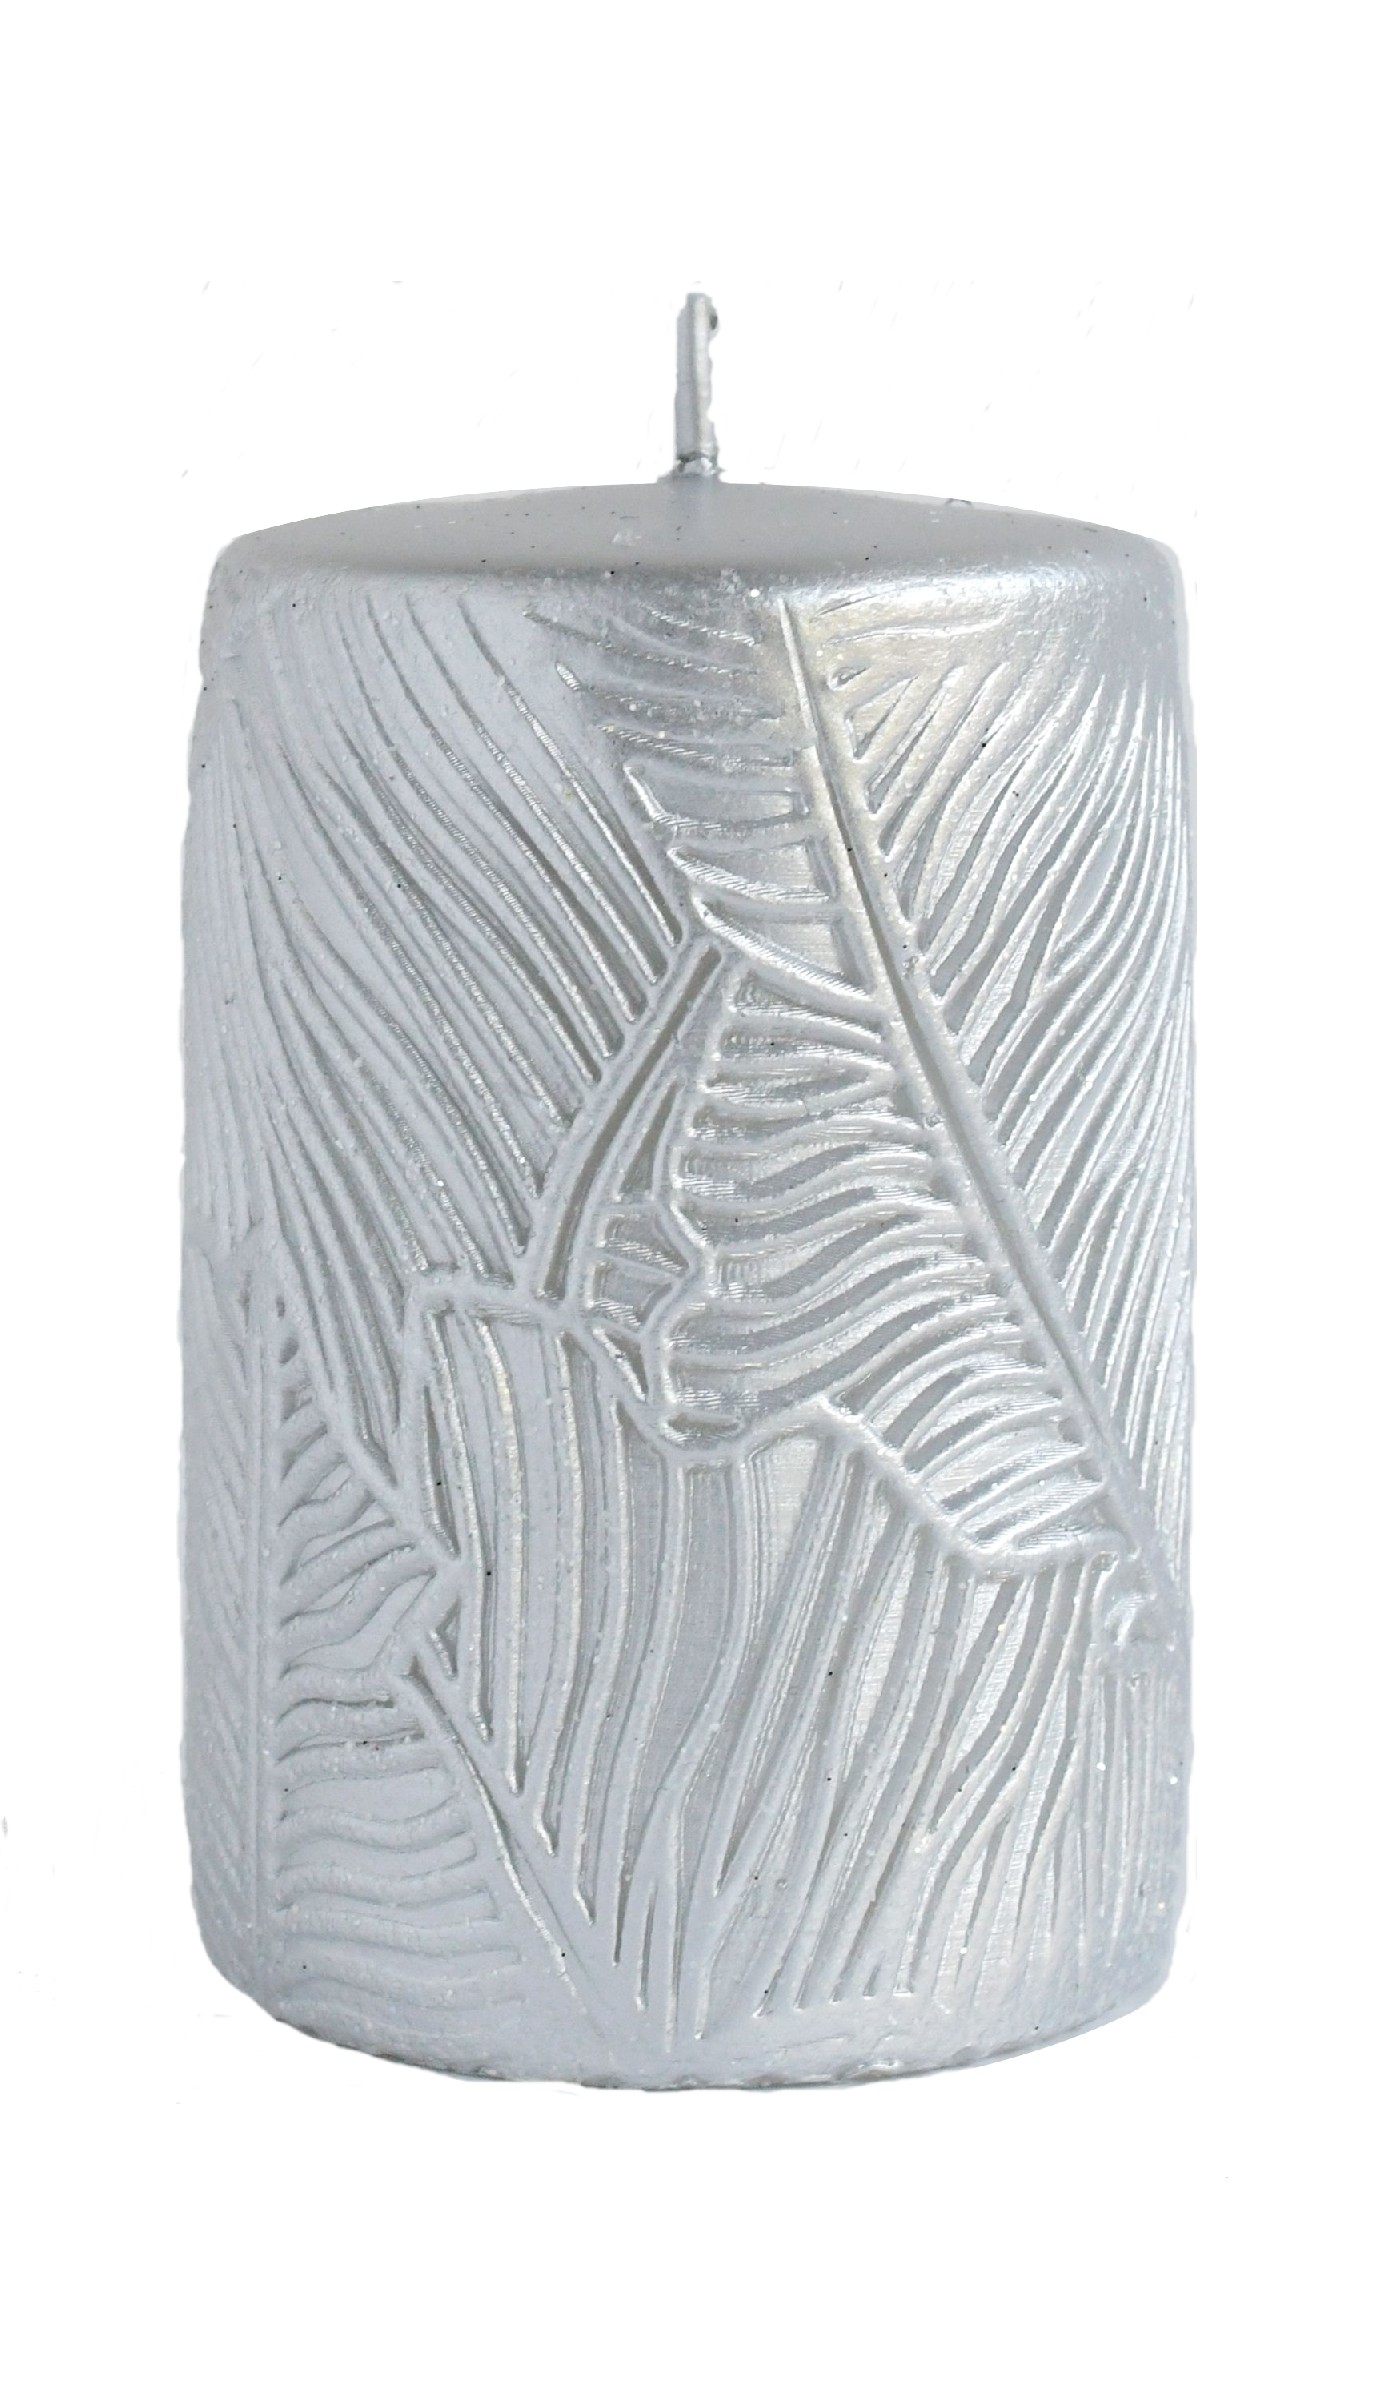 ARTMAN Świeca ozdobna Tivano - walec mały (średnica 7cm) srebrny 1szt